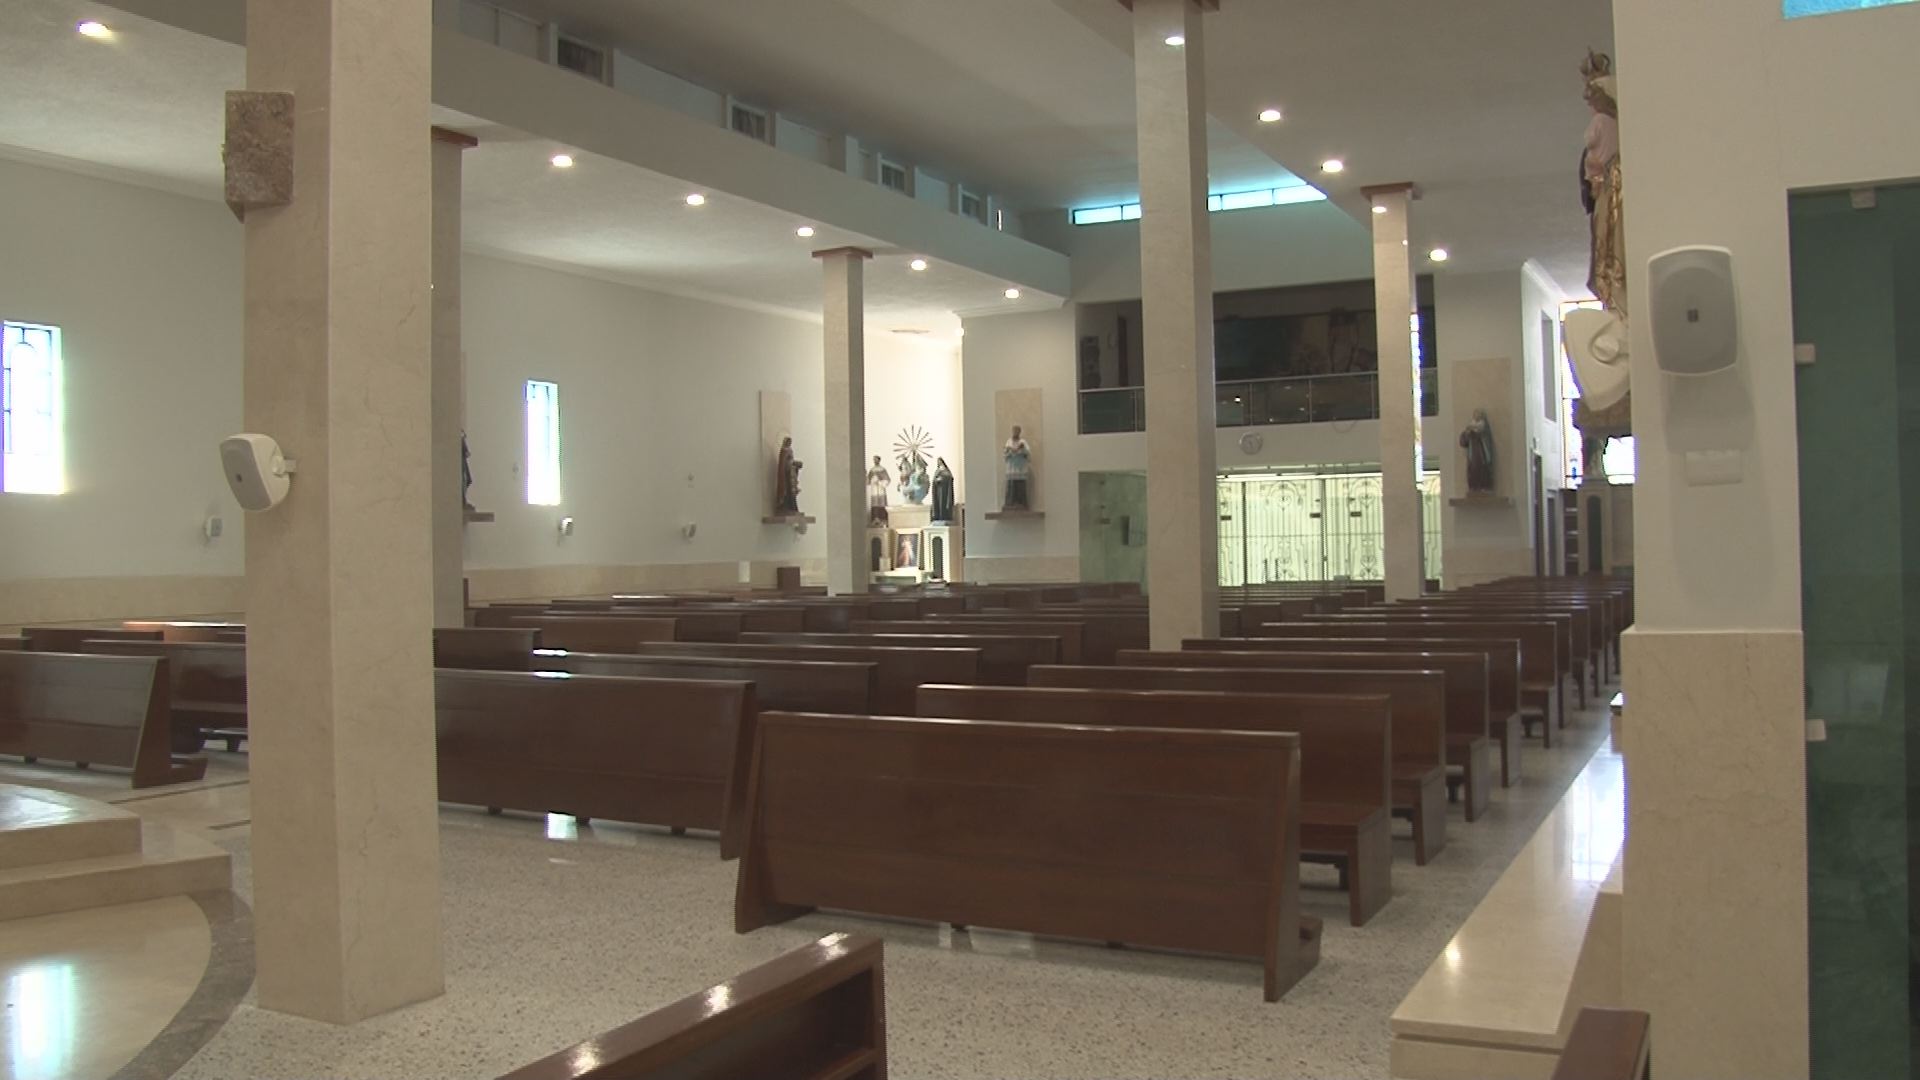 Feligreses de la iglesia del Padre Cuco son víctimas constantes de asaltos  | Sinaloa | Noticias | TVP 